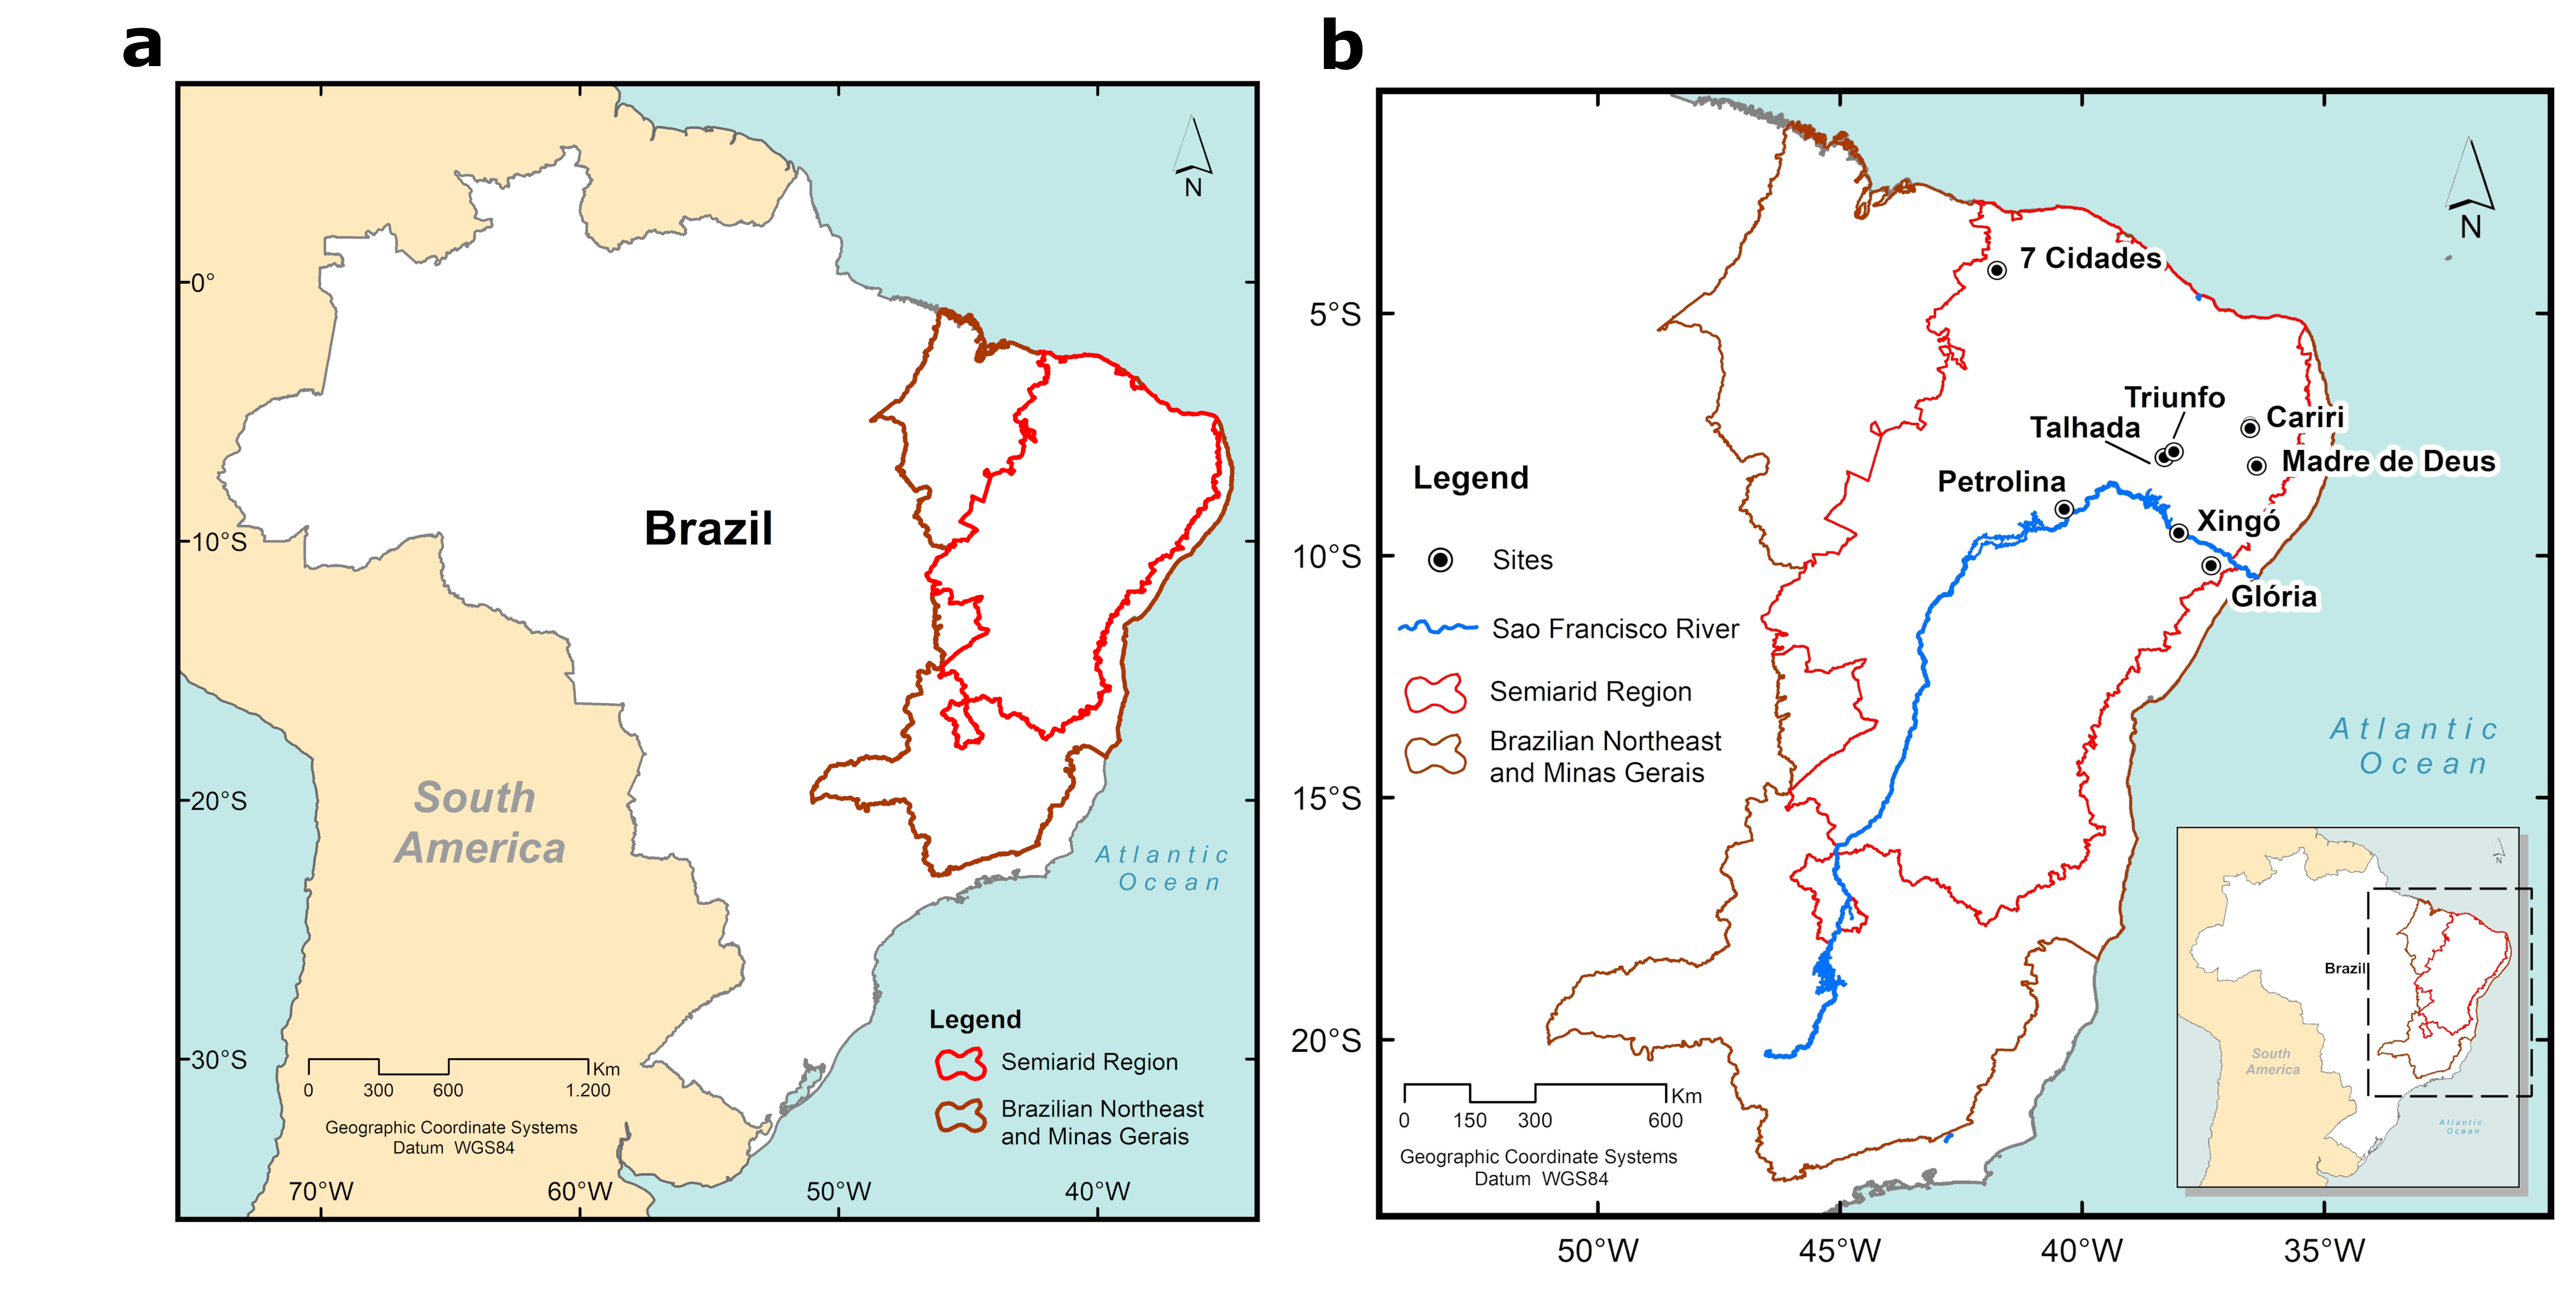 Estudo analisa o fenômeno conhecido como “greening” e a eficiência no Uso da Água durante um período de alta frequência de secas no semiárido brasileiro